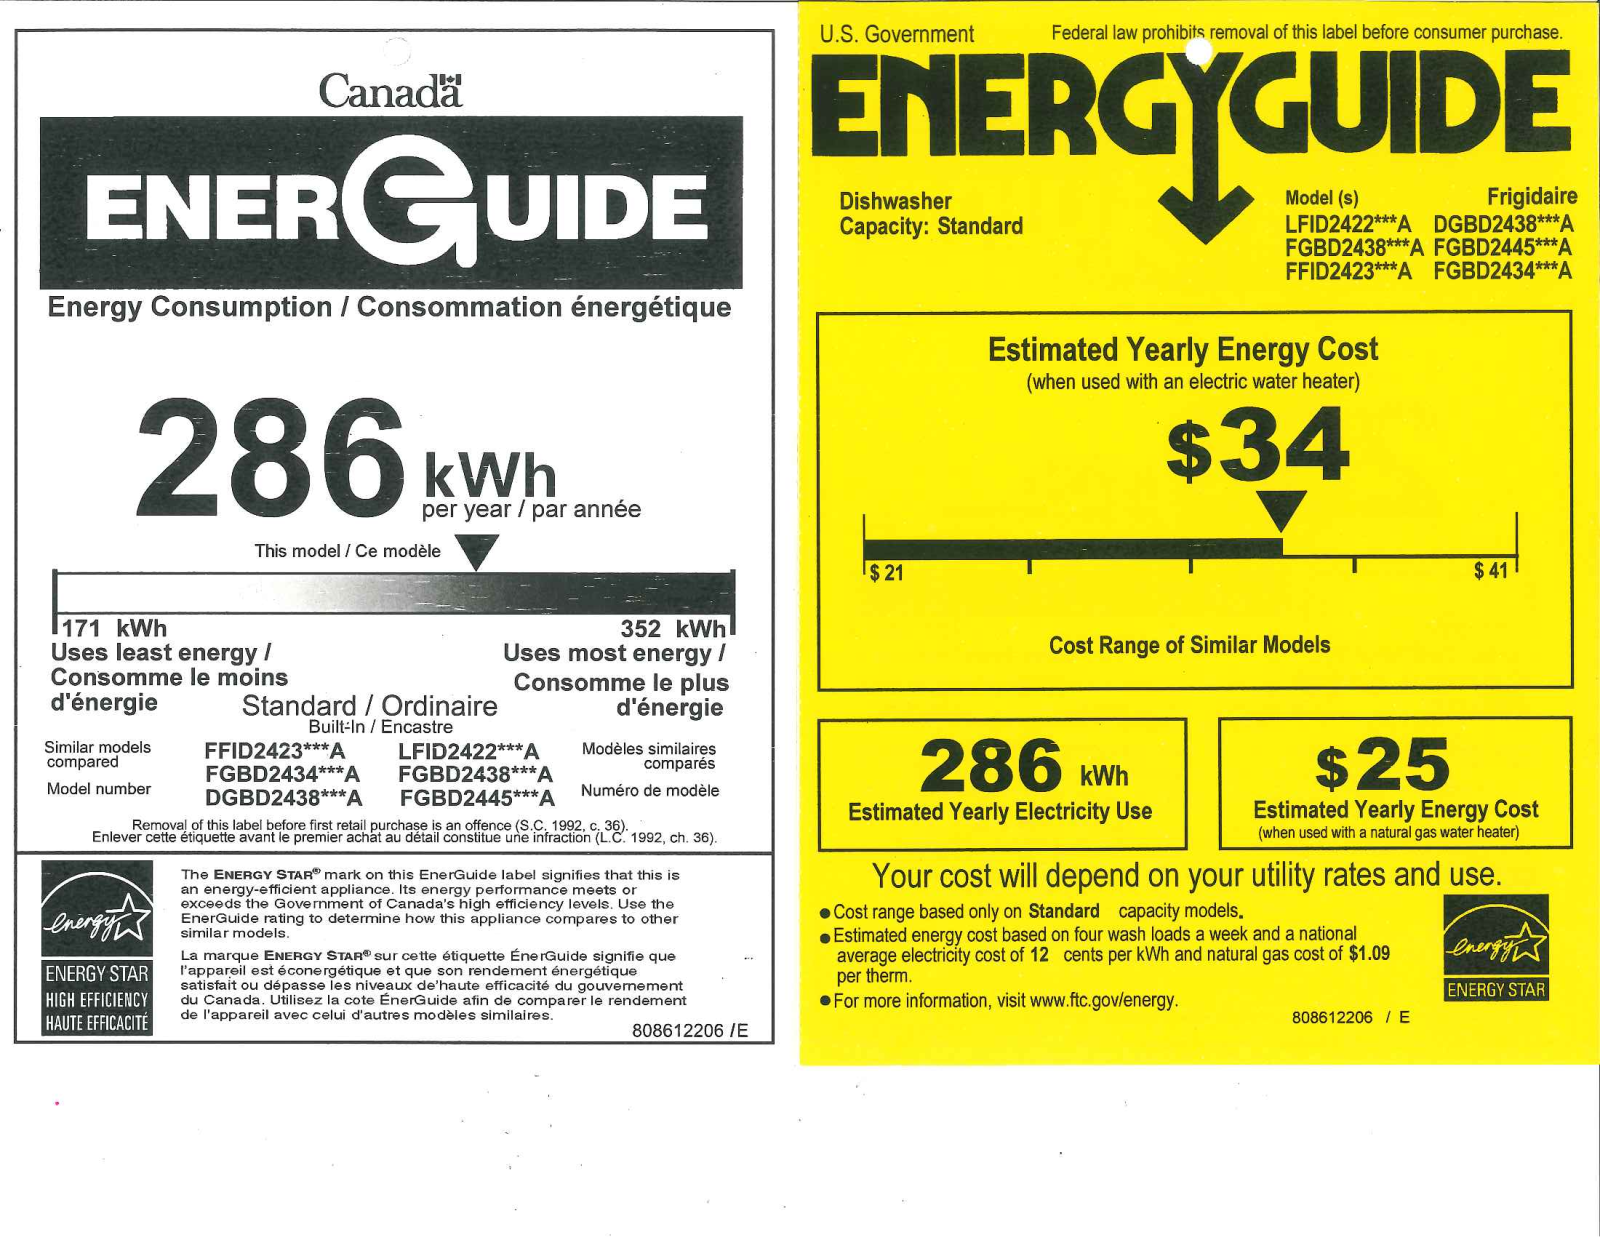 Frigidaire FGBD2445NB, FGBD2445NF, FGBD2445NQ, FGBD2445NW Energy Guide